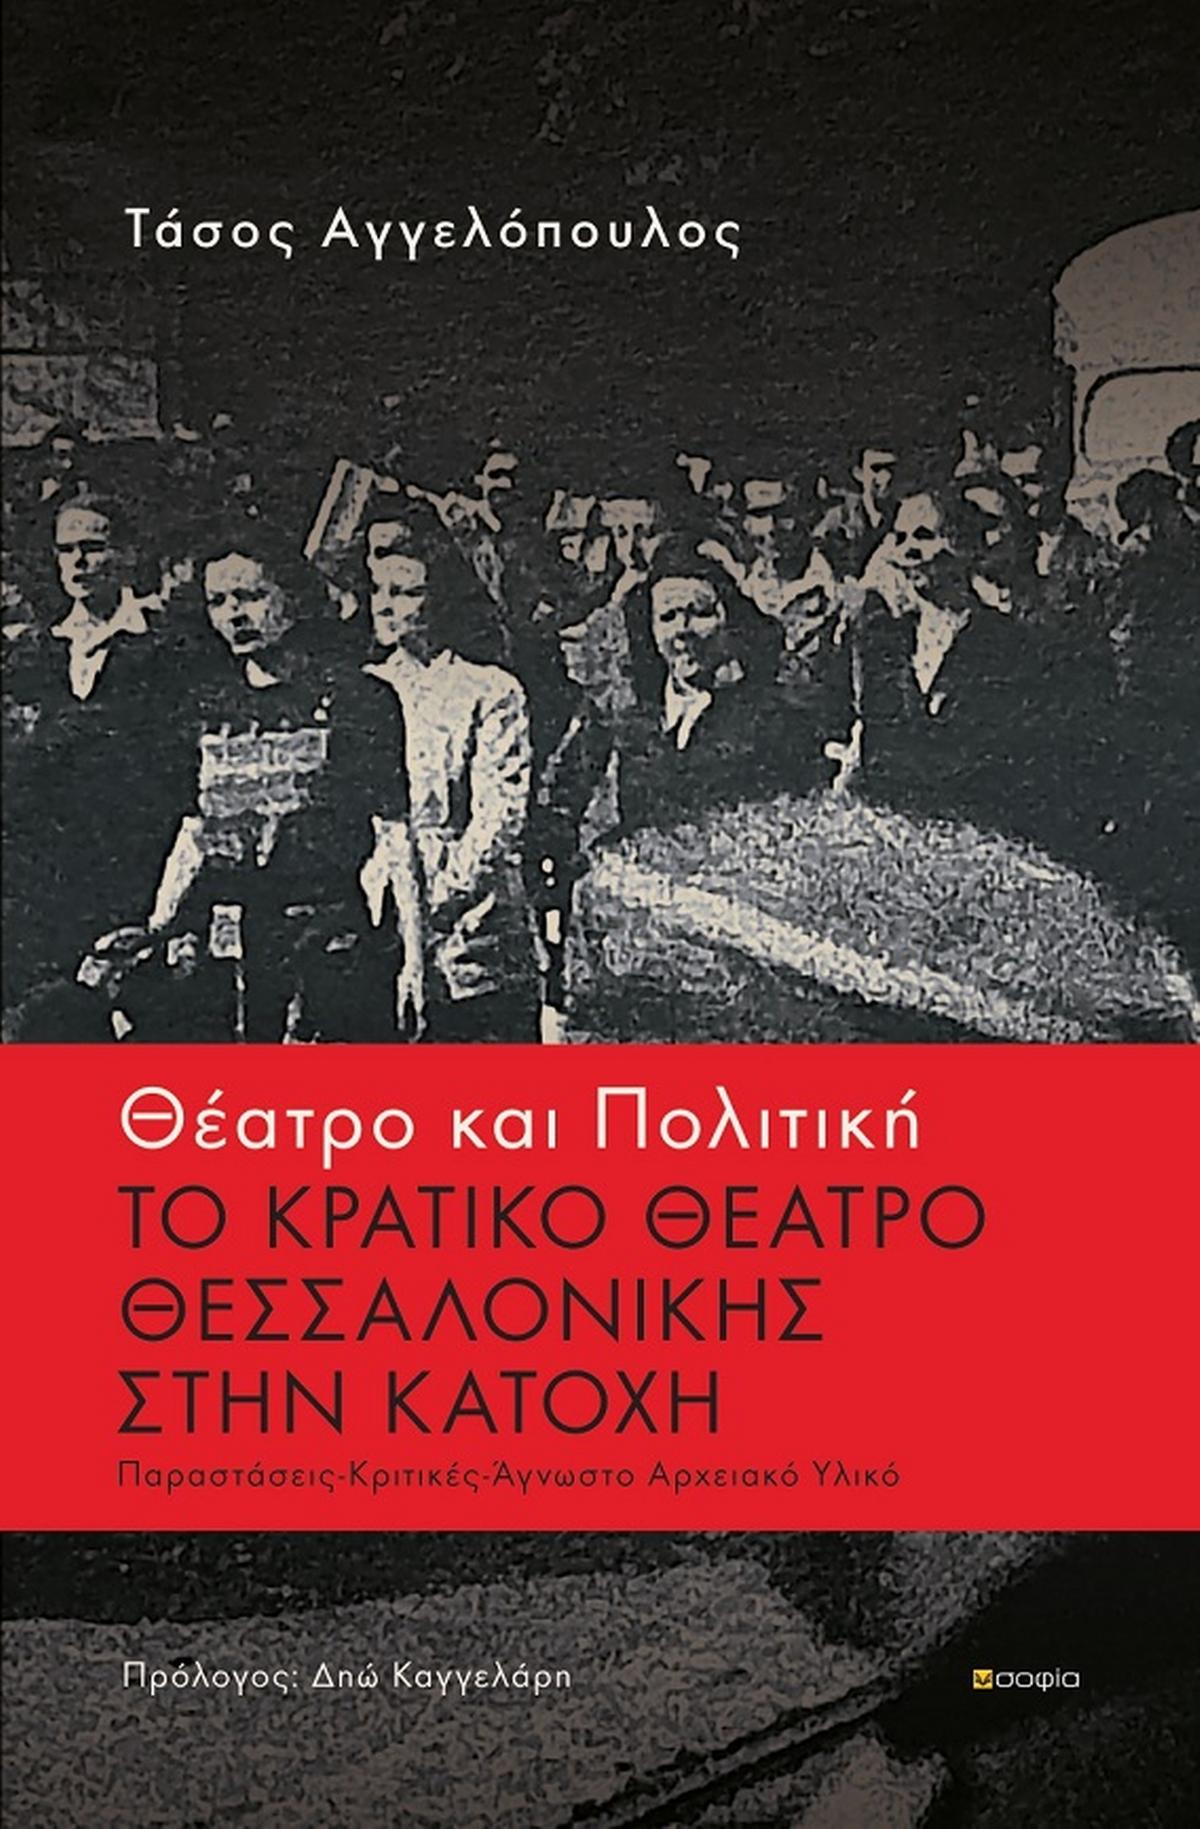 Θέατρο και πολιτική: Το κρατικό θέατρο Θεσσαλονίκης στην κατοχή